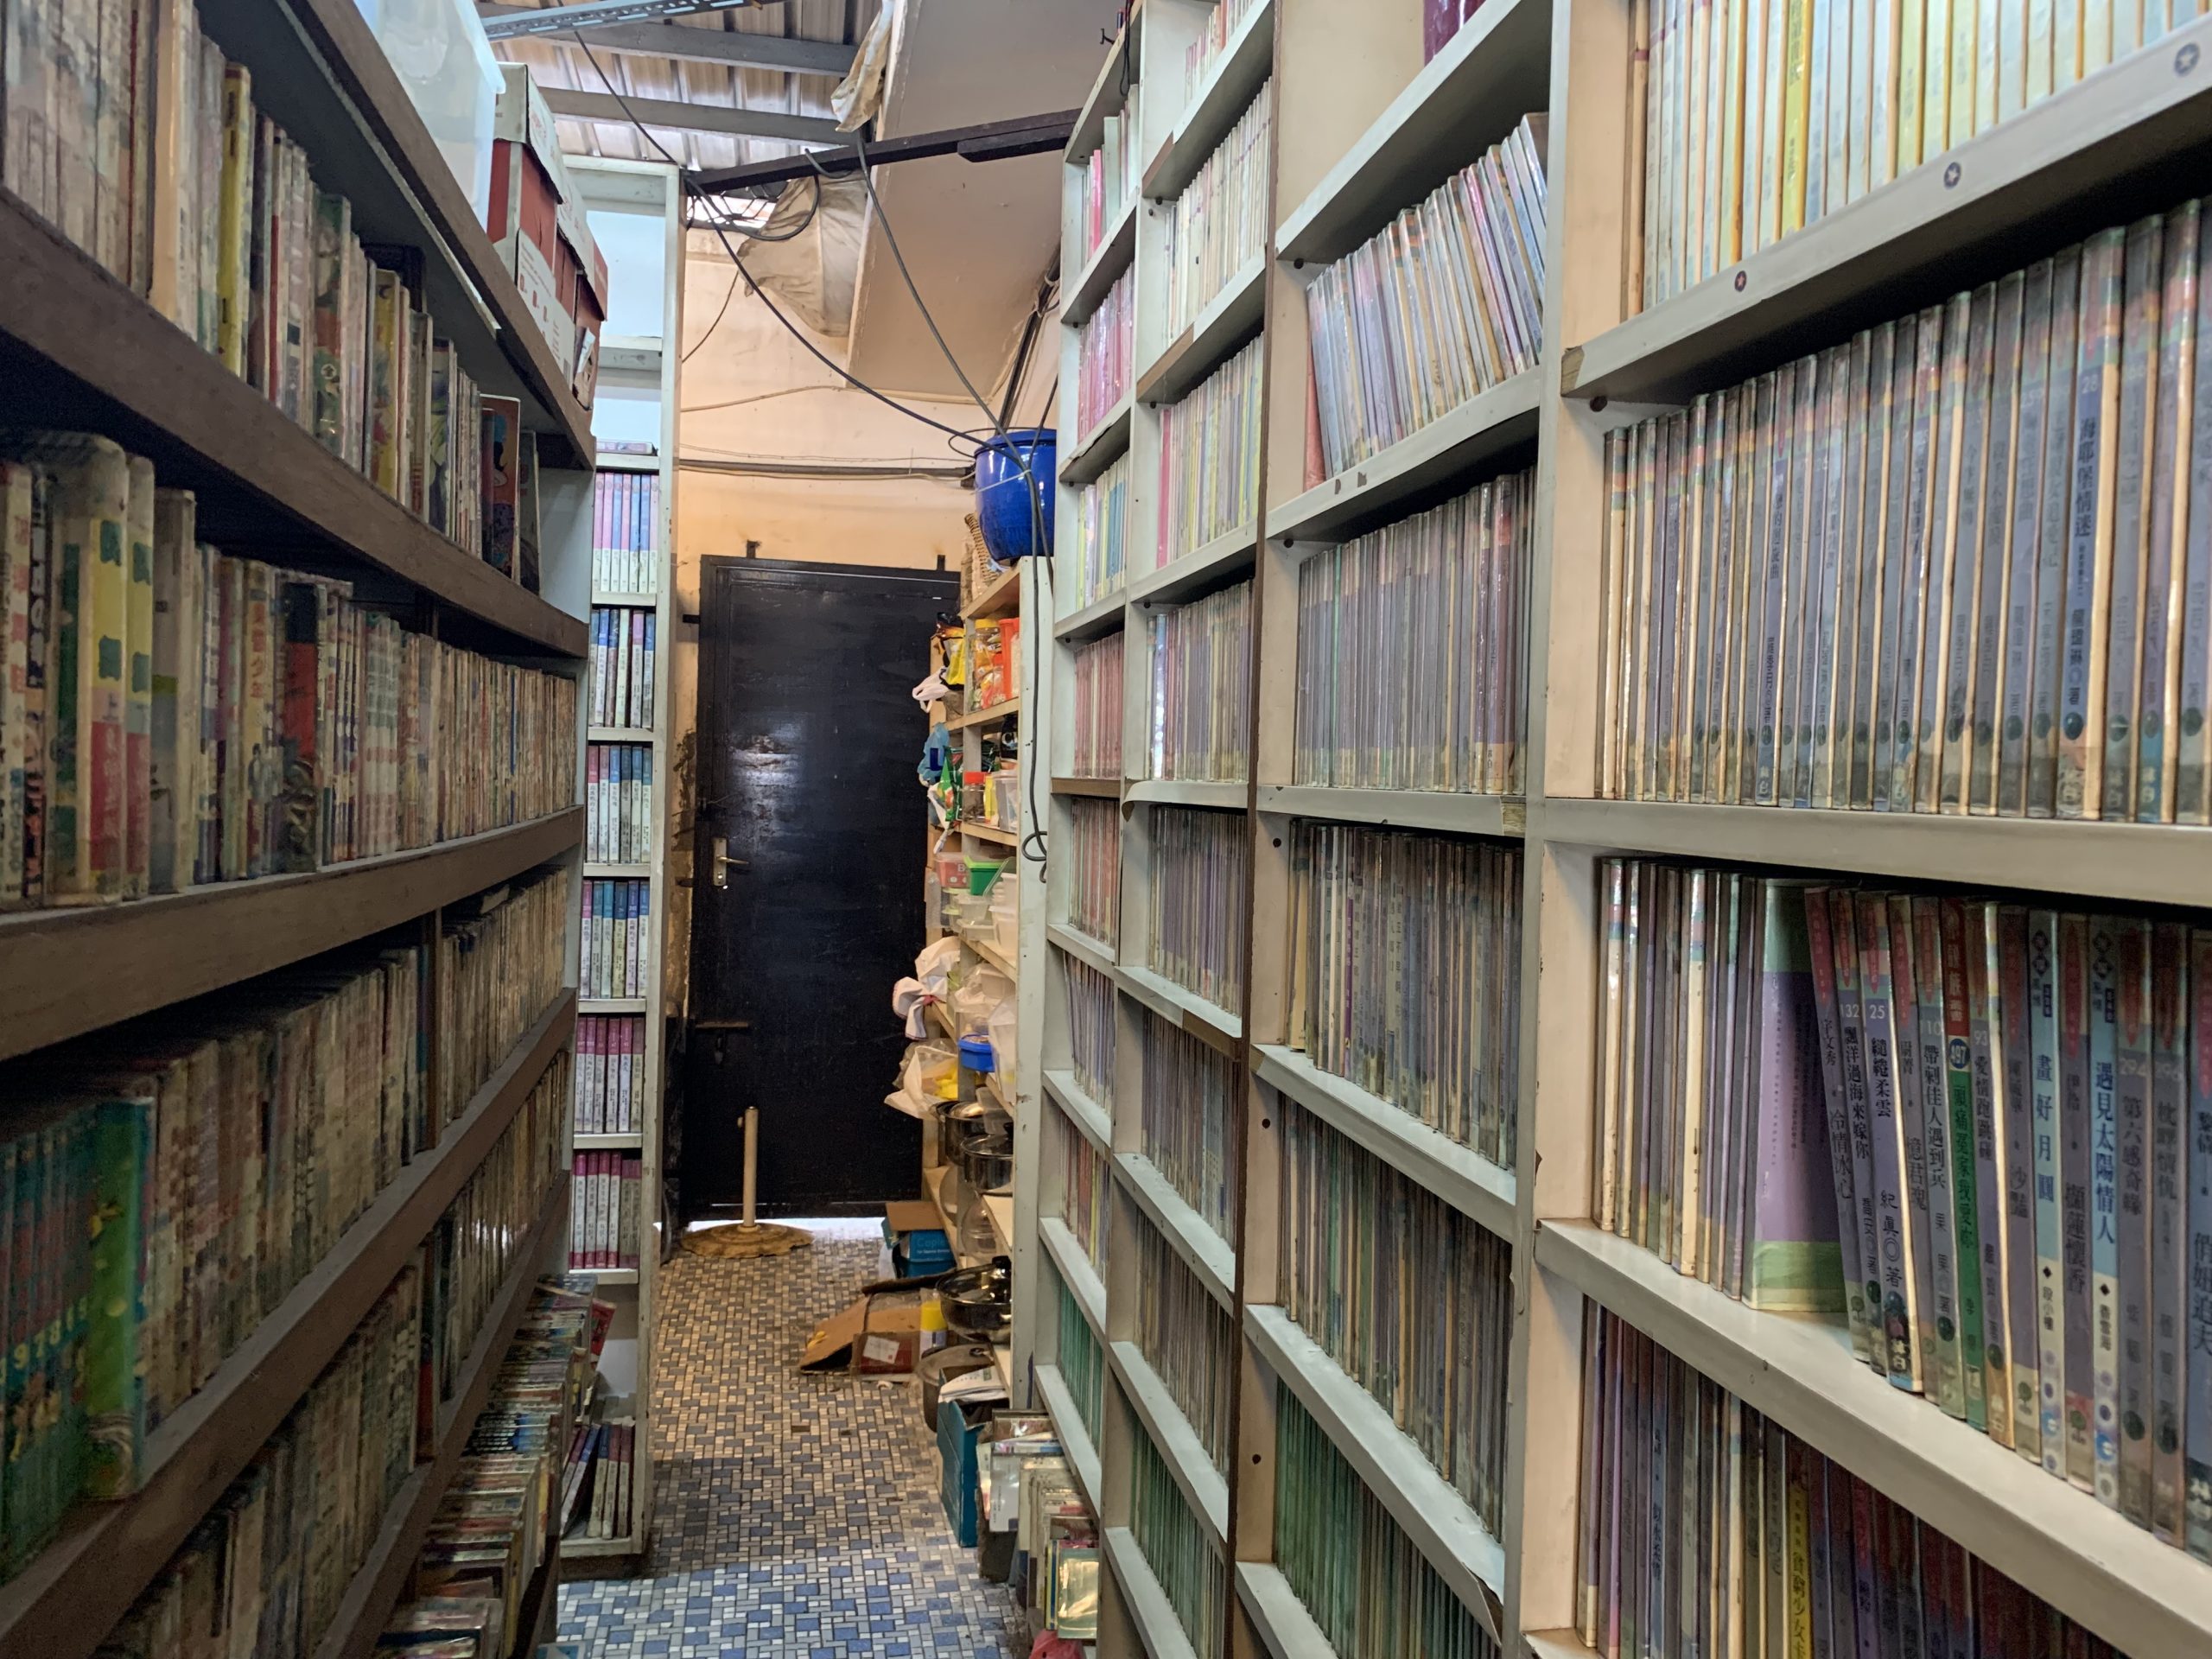 报馆街租书文具店出让上万本旧书，勾起租书迷们回忆